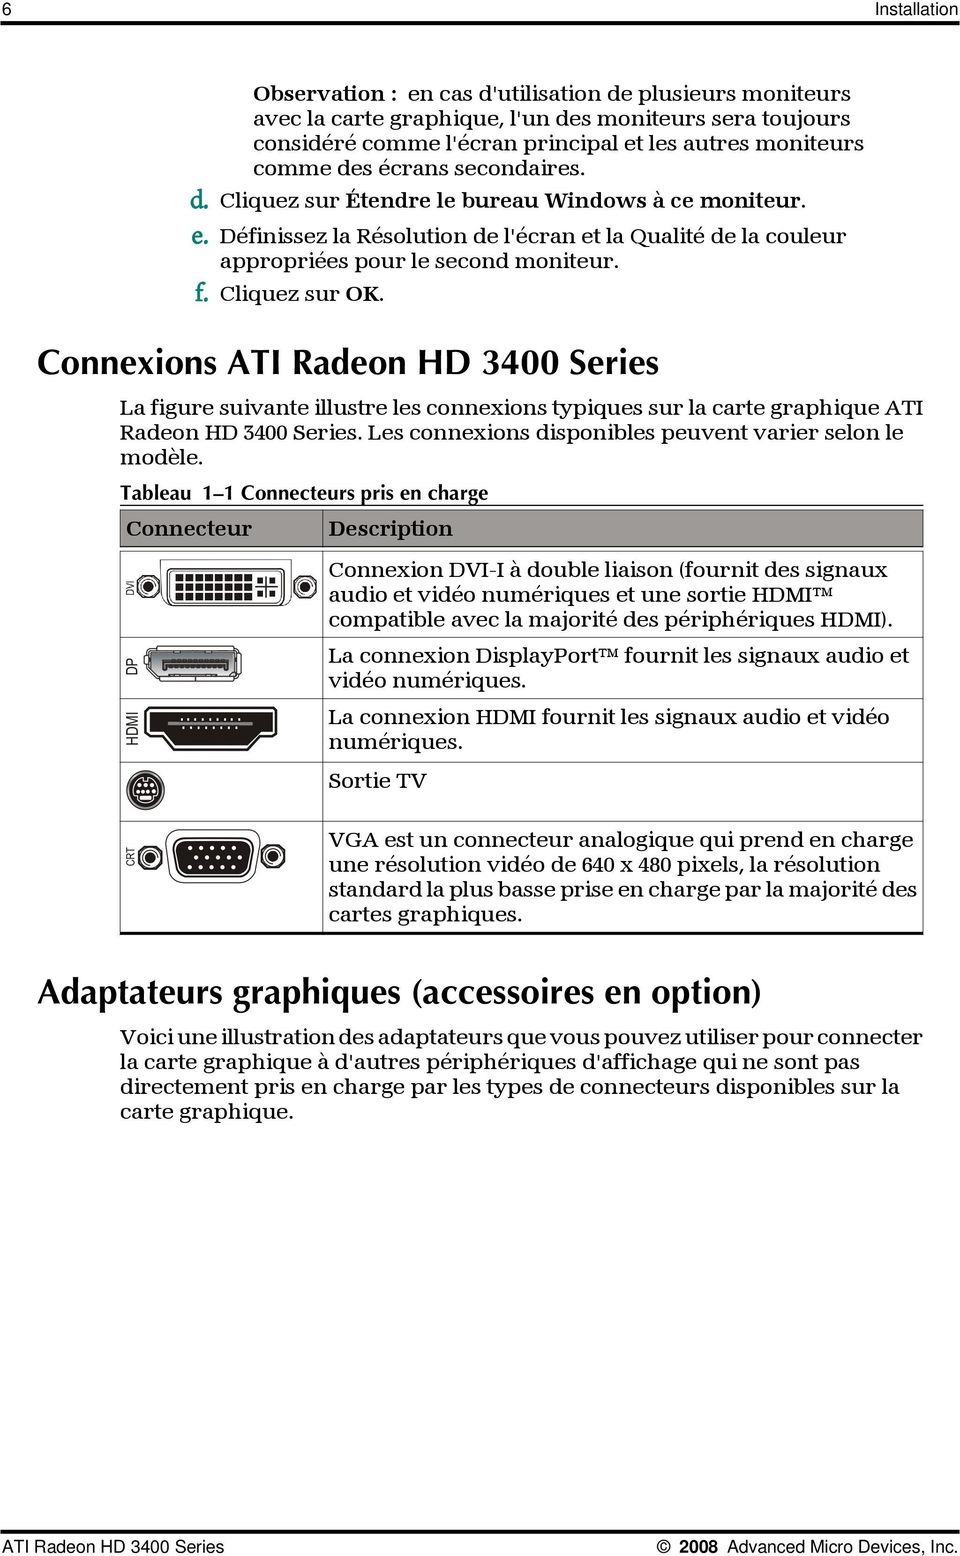 Connexions ATI Radeon HD 3400 Series La figure suivante illustre les connexions typiques sur la carte graphique ATI Radeon HD 3400 Series. Les connexions disponibles peuvent varier selon le modèle.